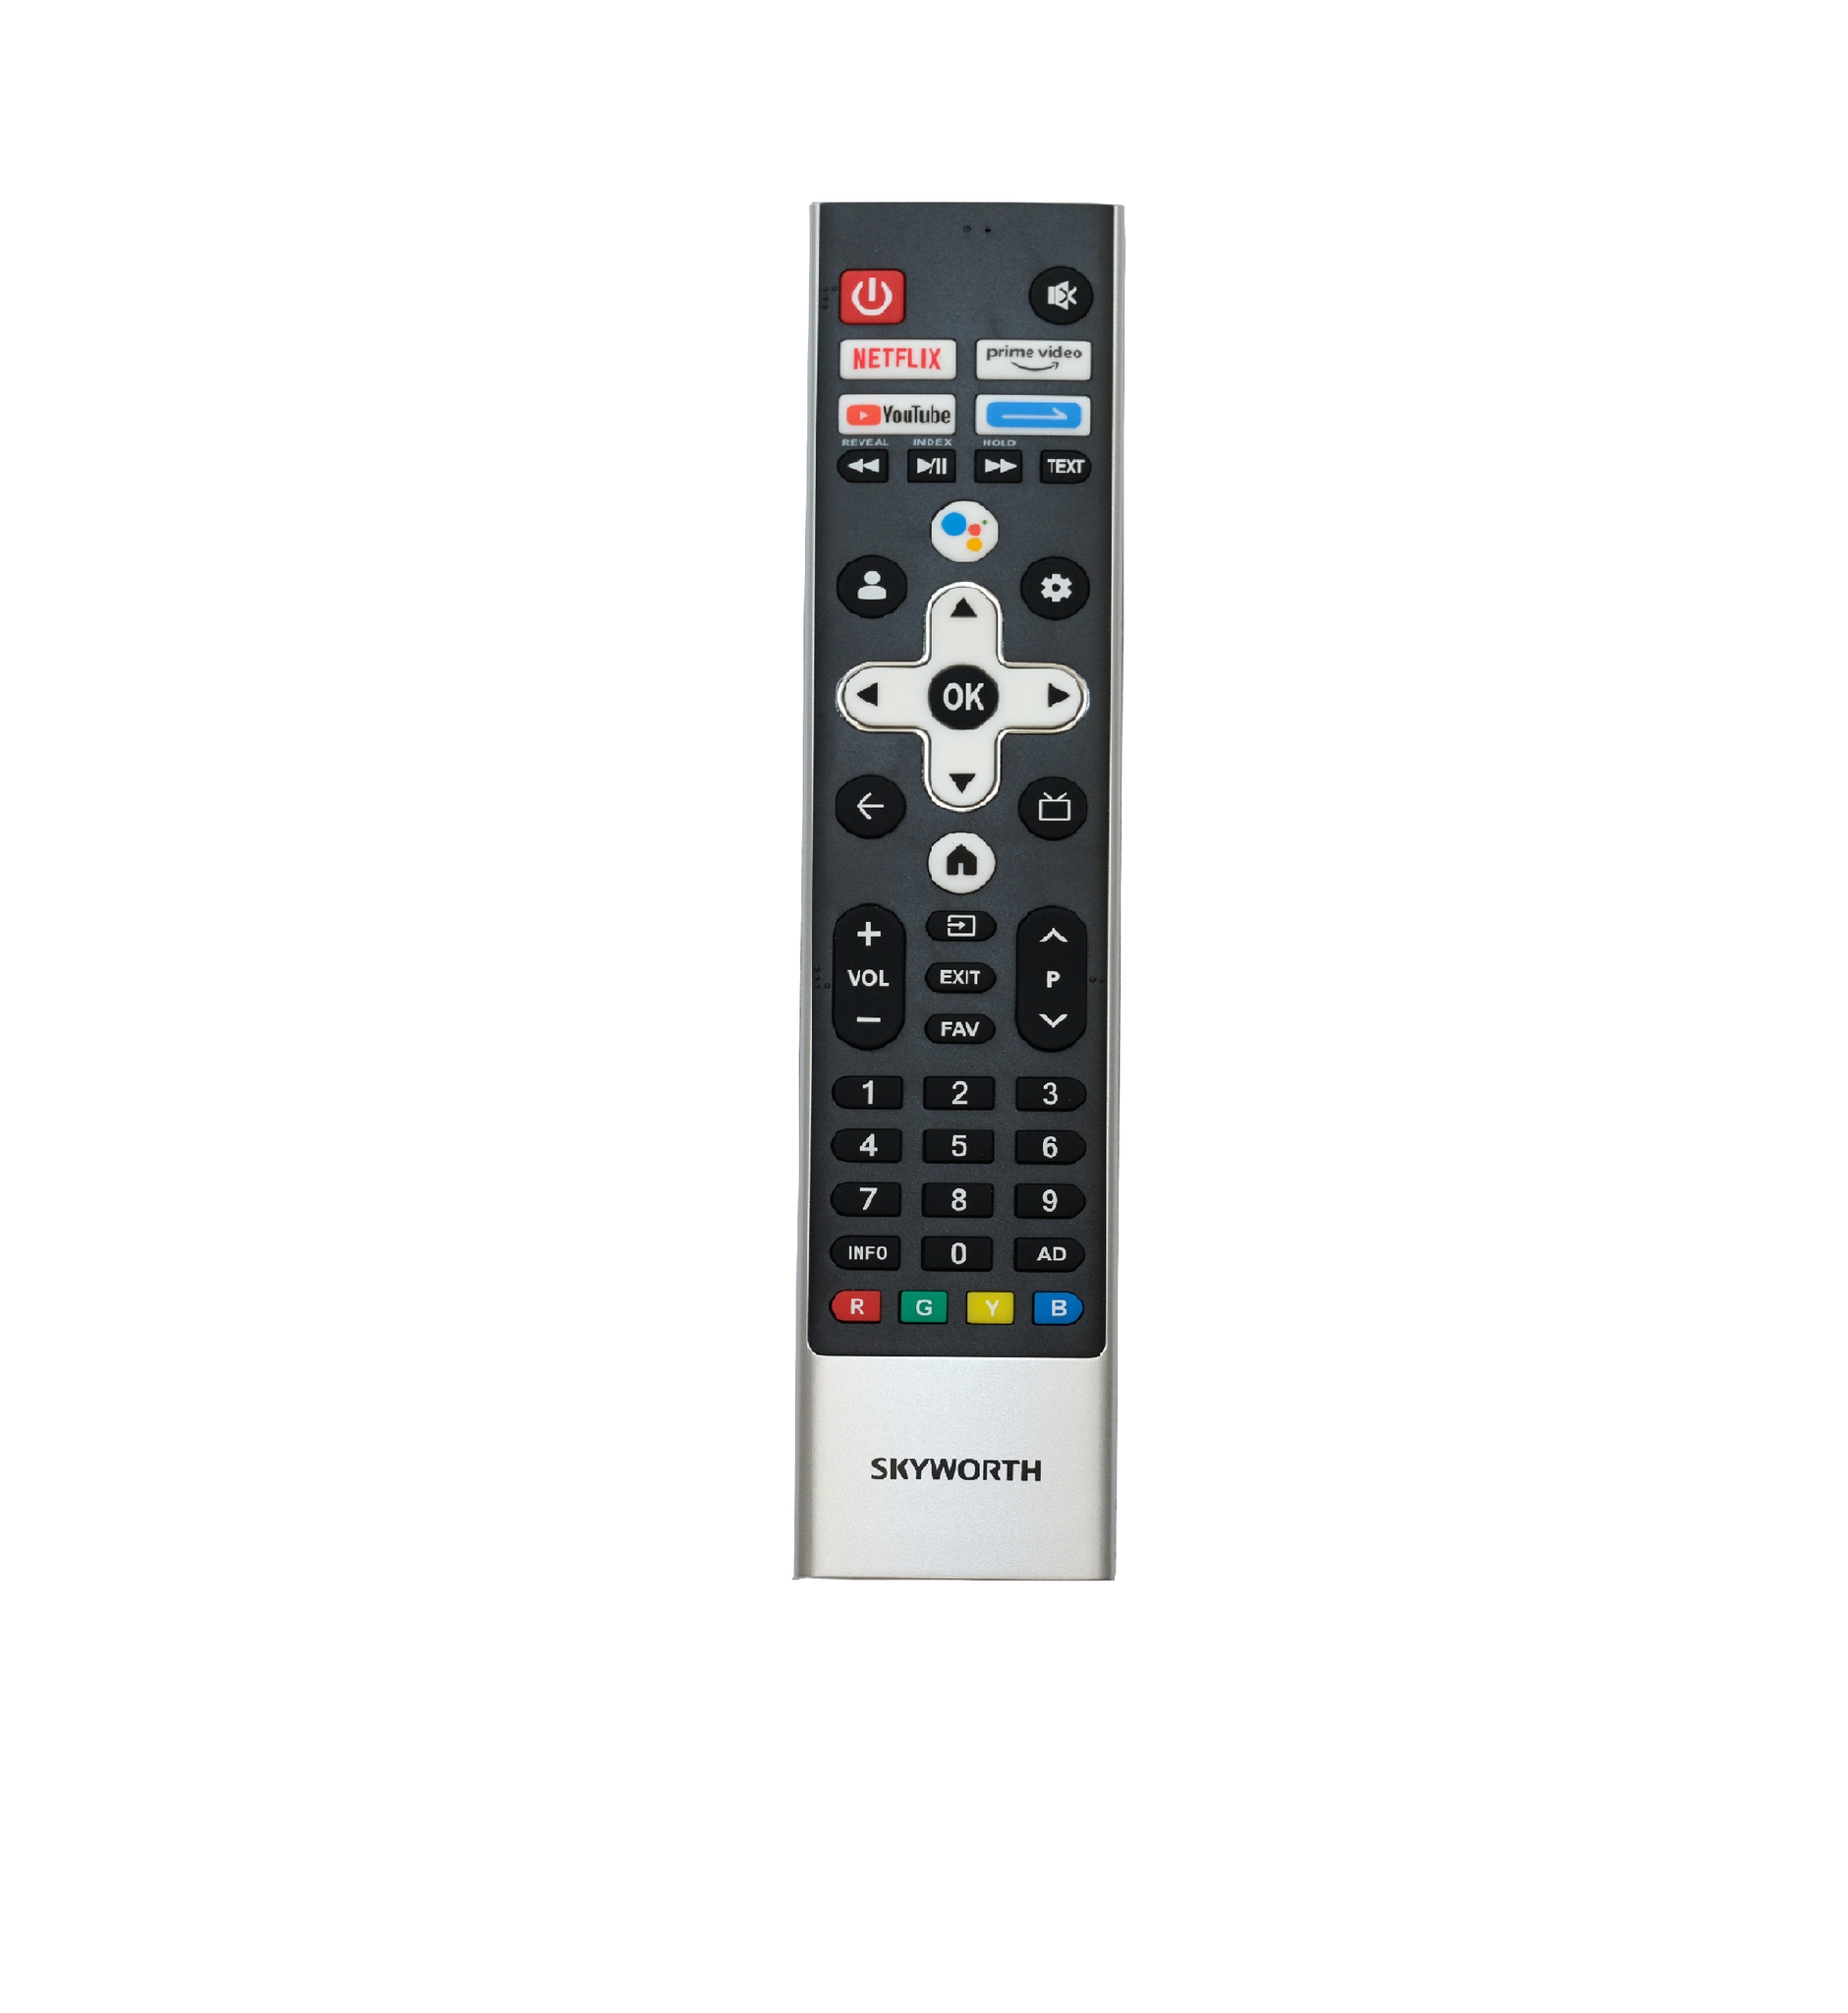 Skyworth TV Remote for Google TV models